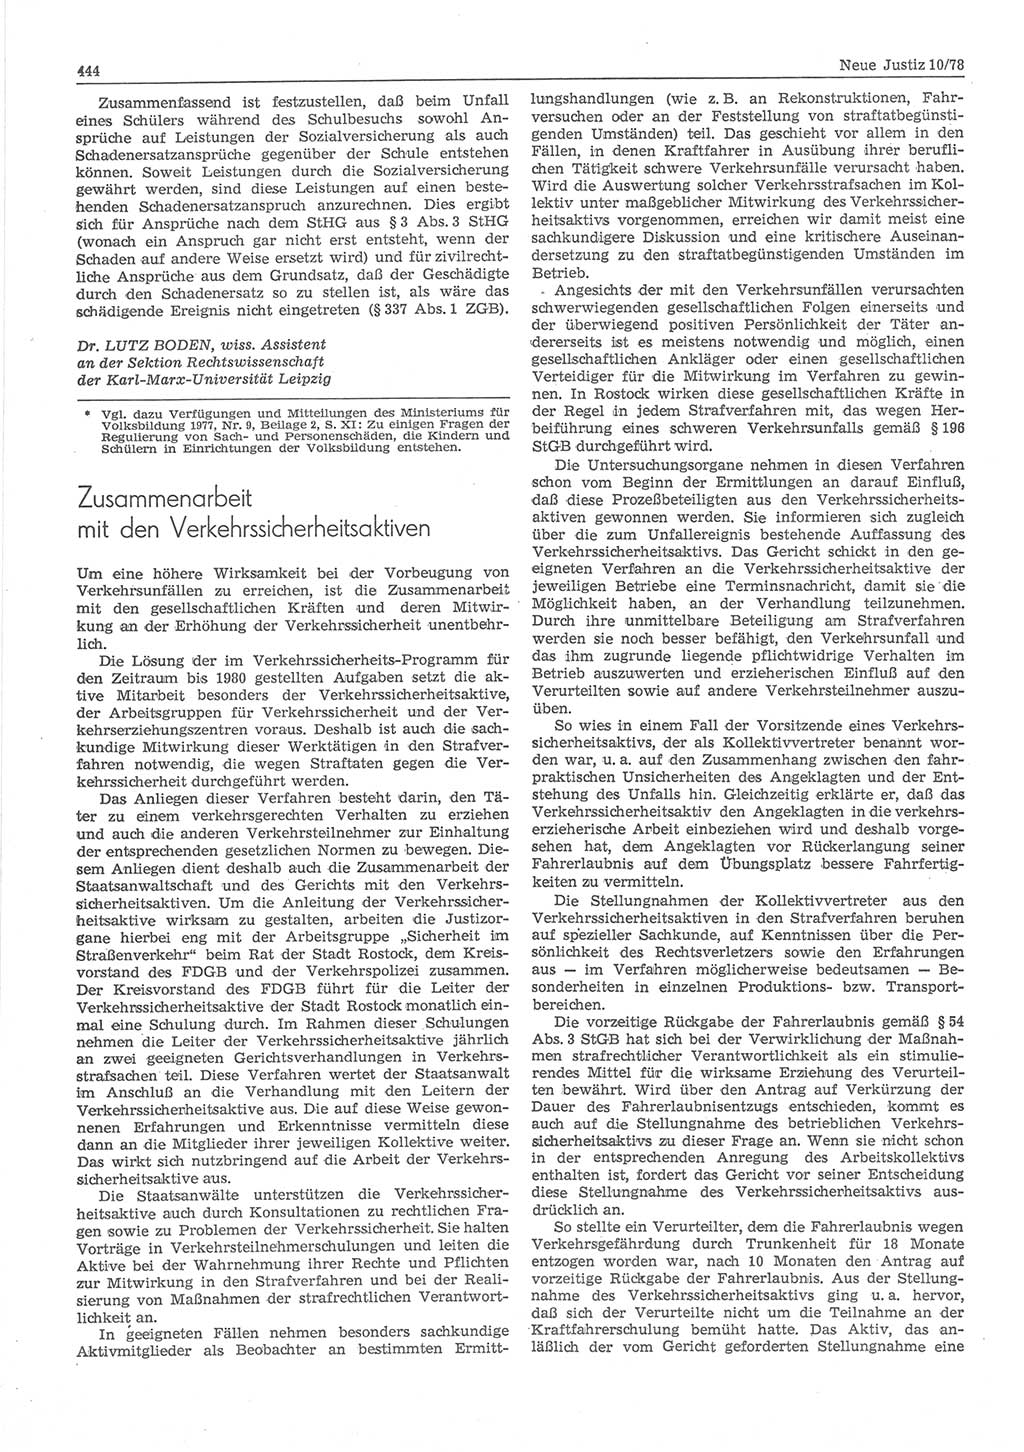 Neue Justiz (NJ), Zeitschrift für sozialistisches Recht und Gesetzlichkeit [Deutsche Demokratische Republik (DDR)], 32. Jahrgang 1978, Seite 444 (NJ DDR 1978, S. 444)